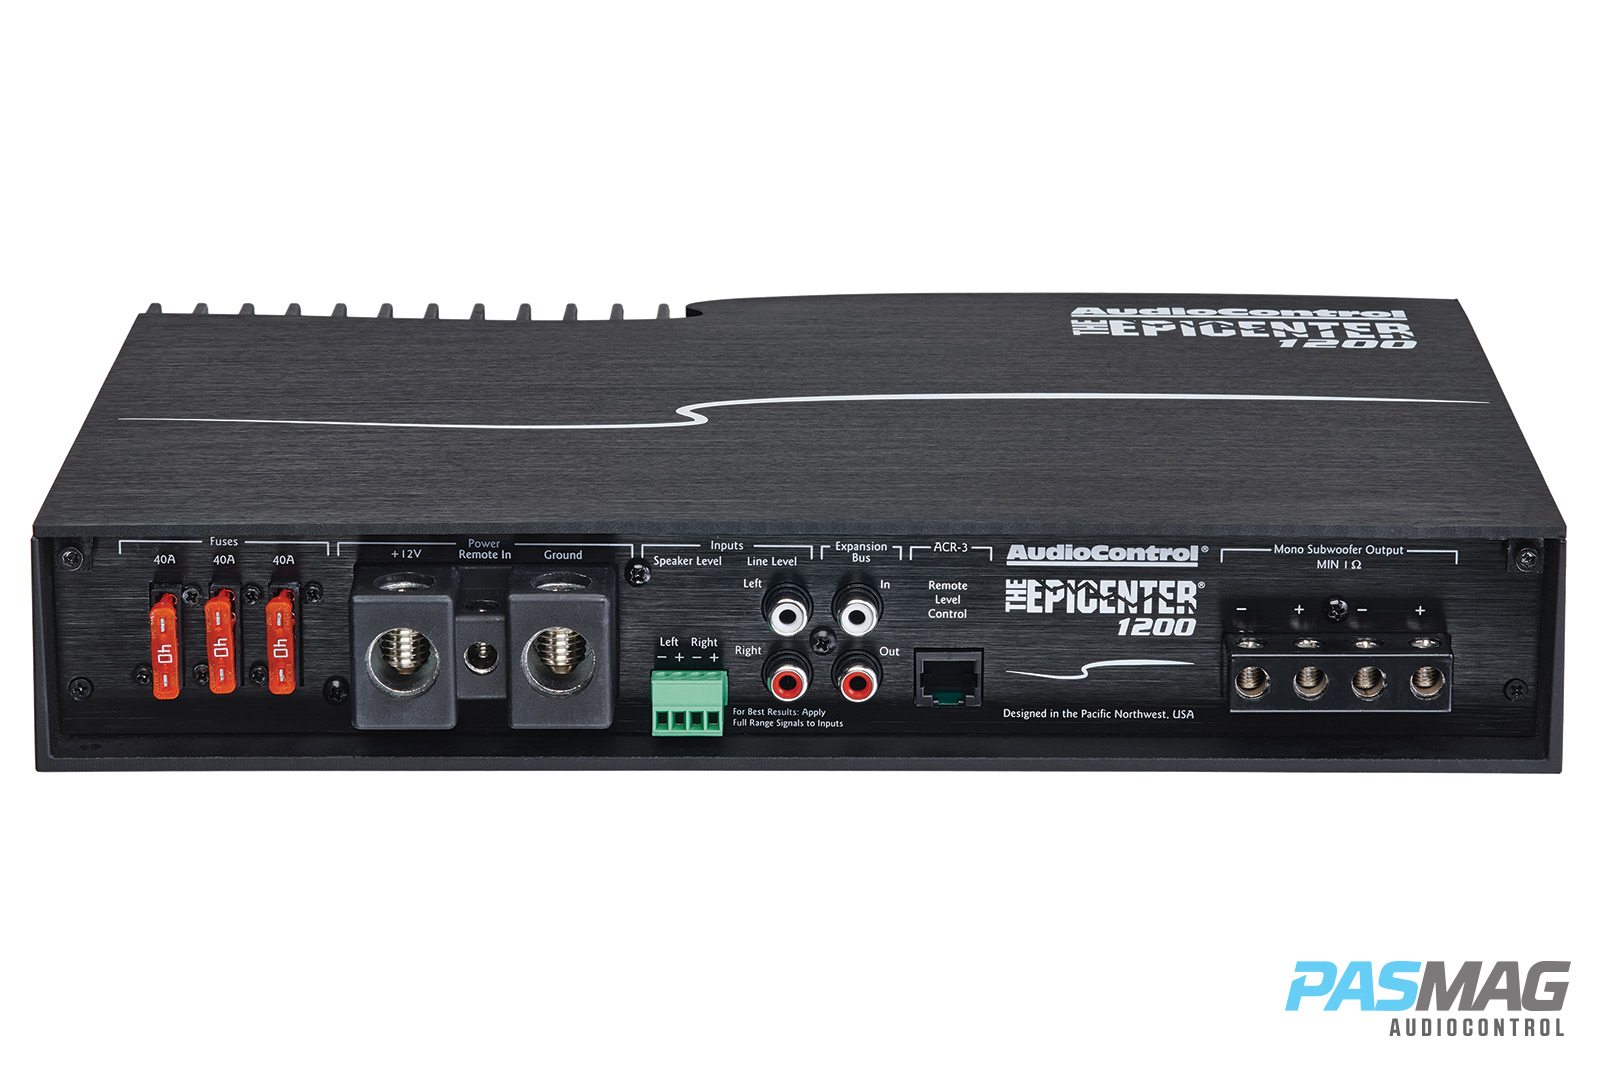 AudioControl Epicenter 1200 PASMAG Amplifier Review 5